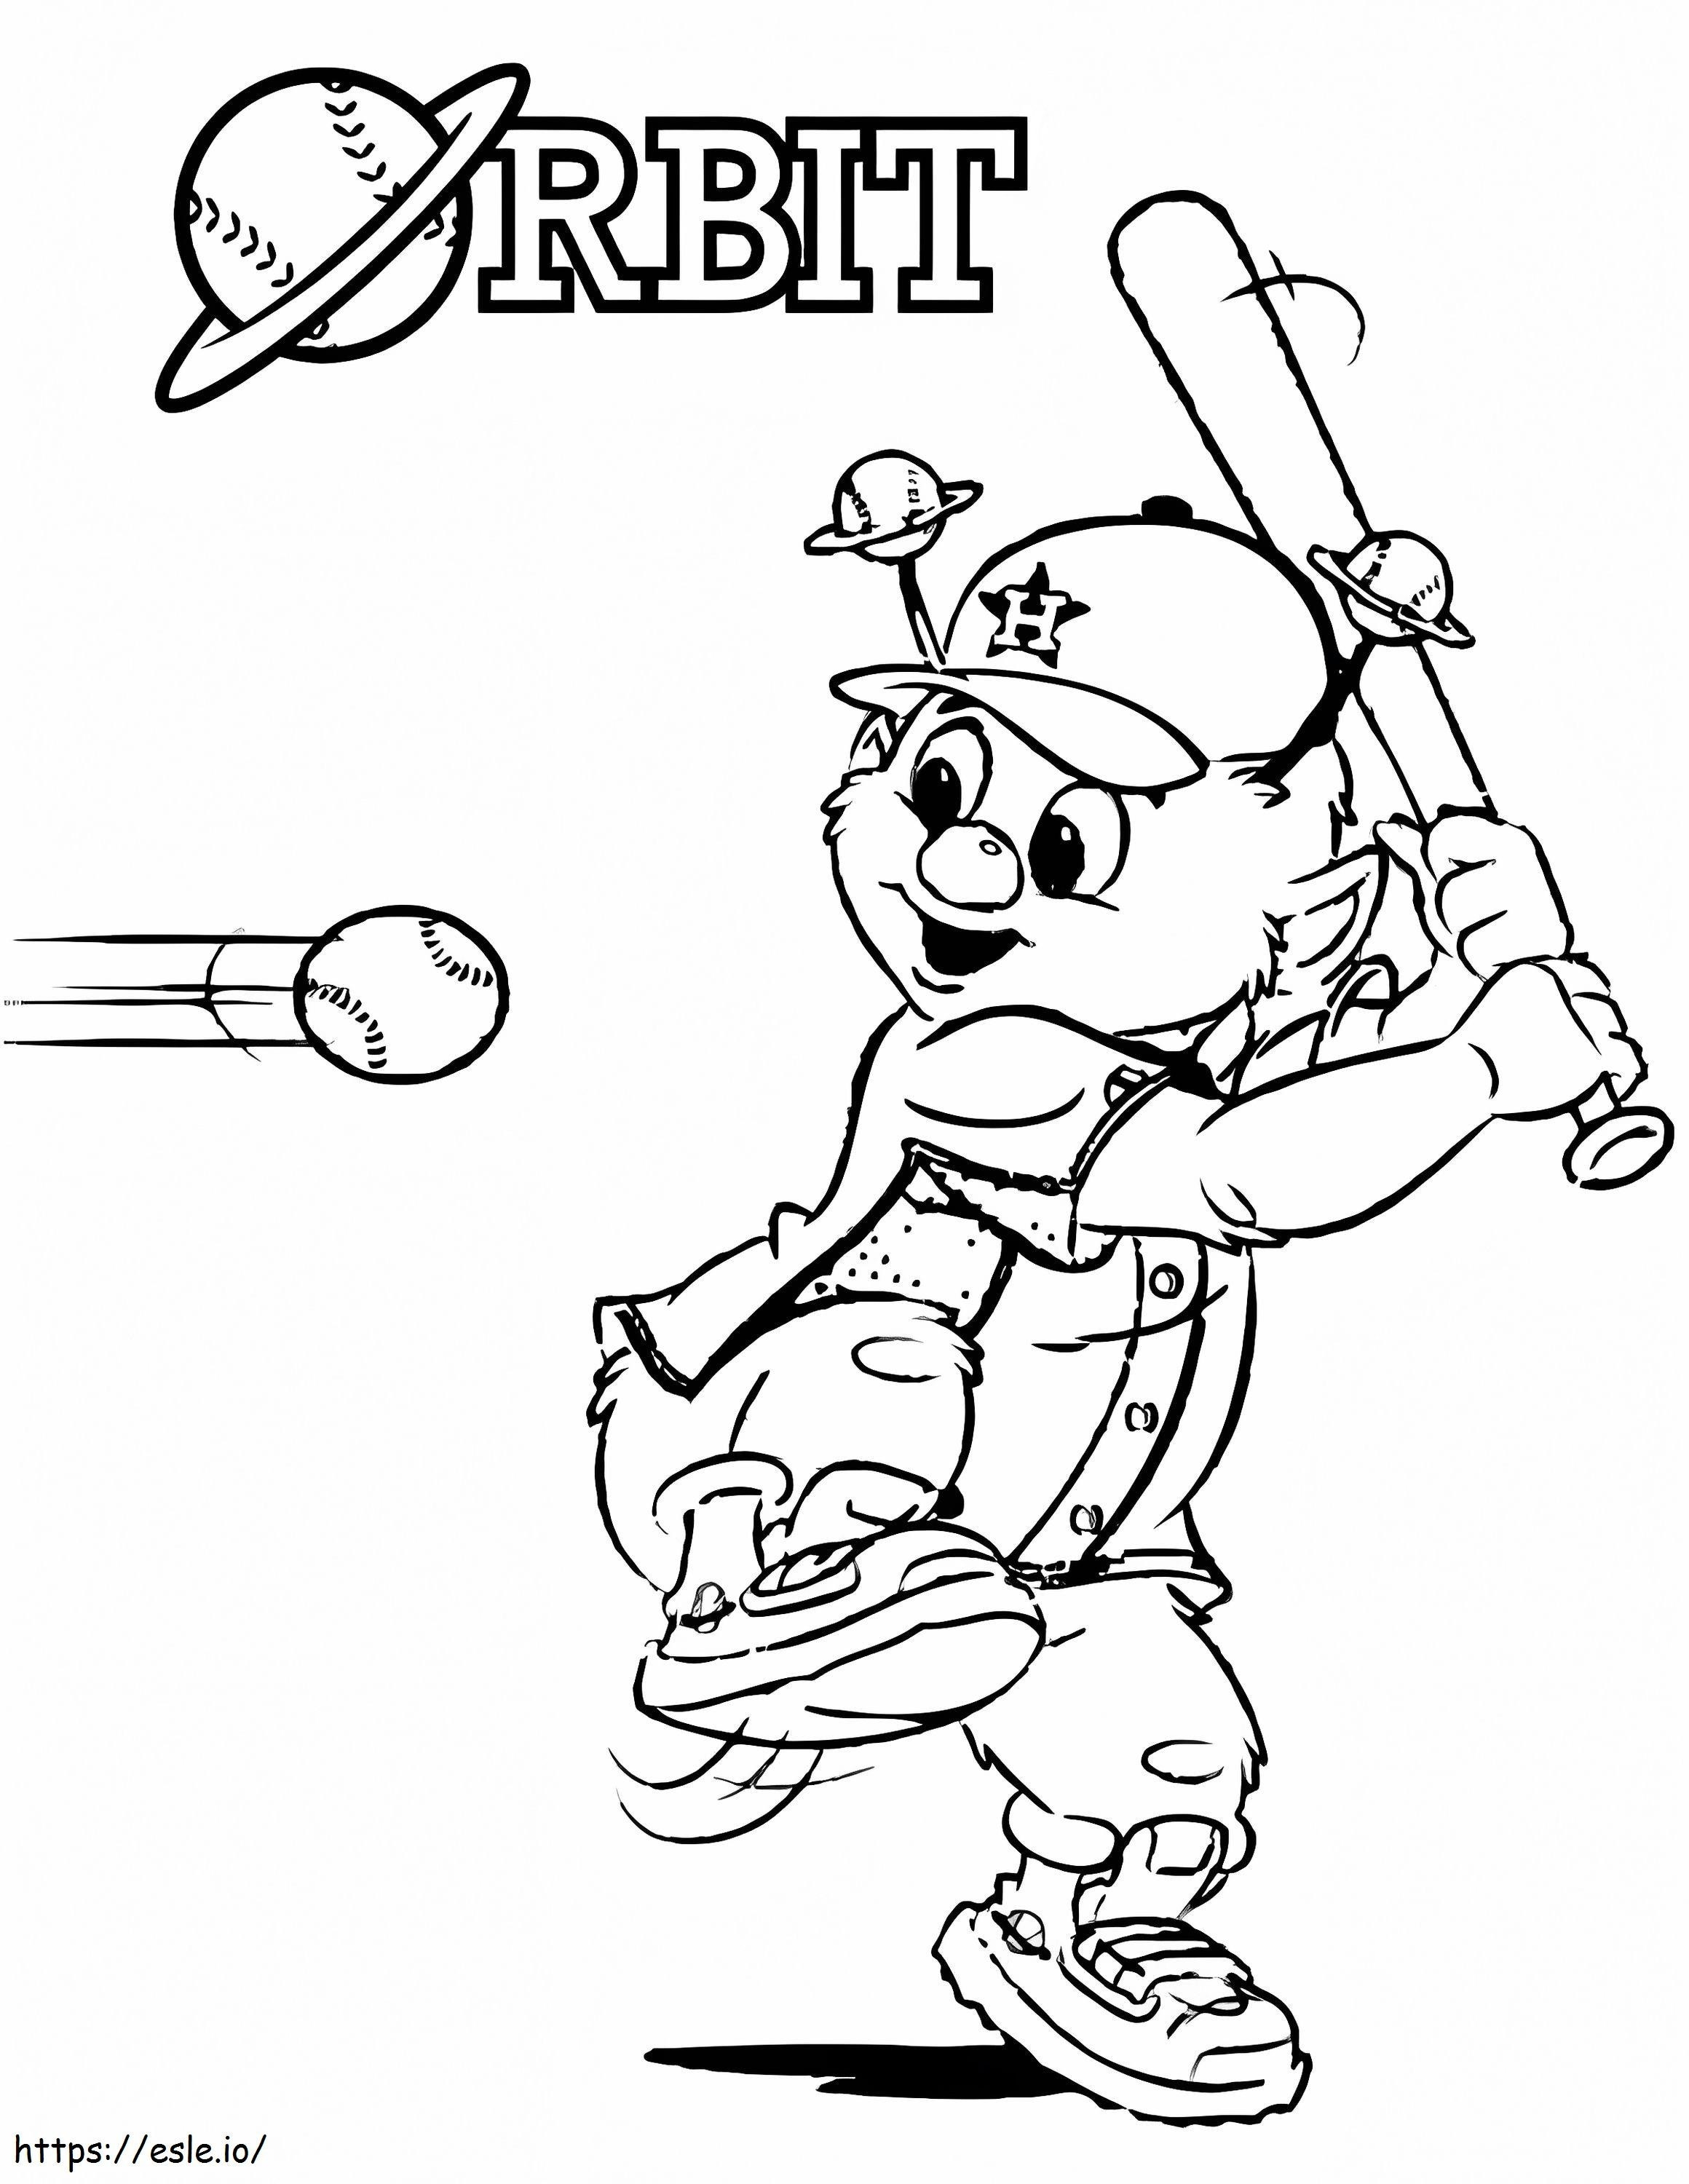 Orbit The Mascot az MLB-ben kifestő